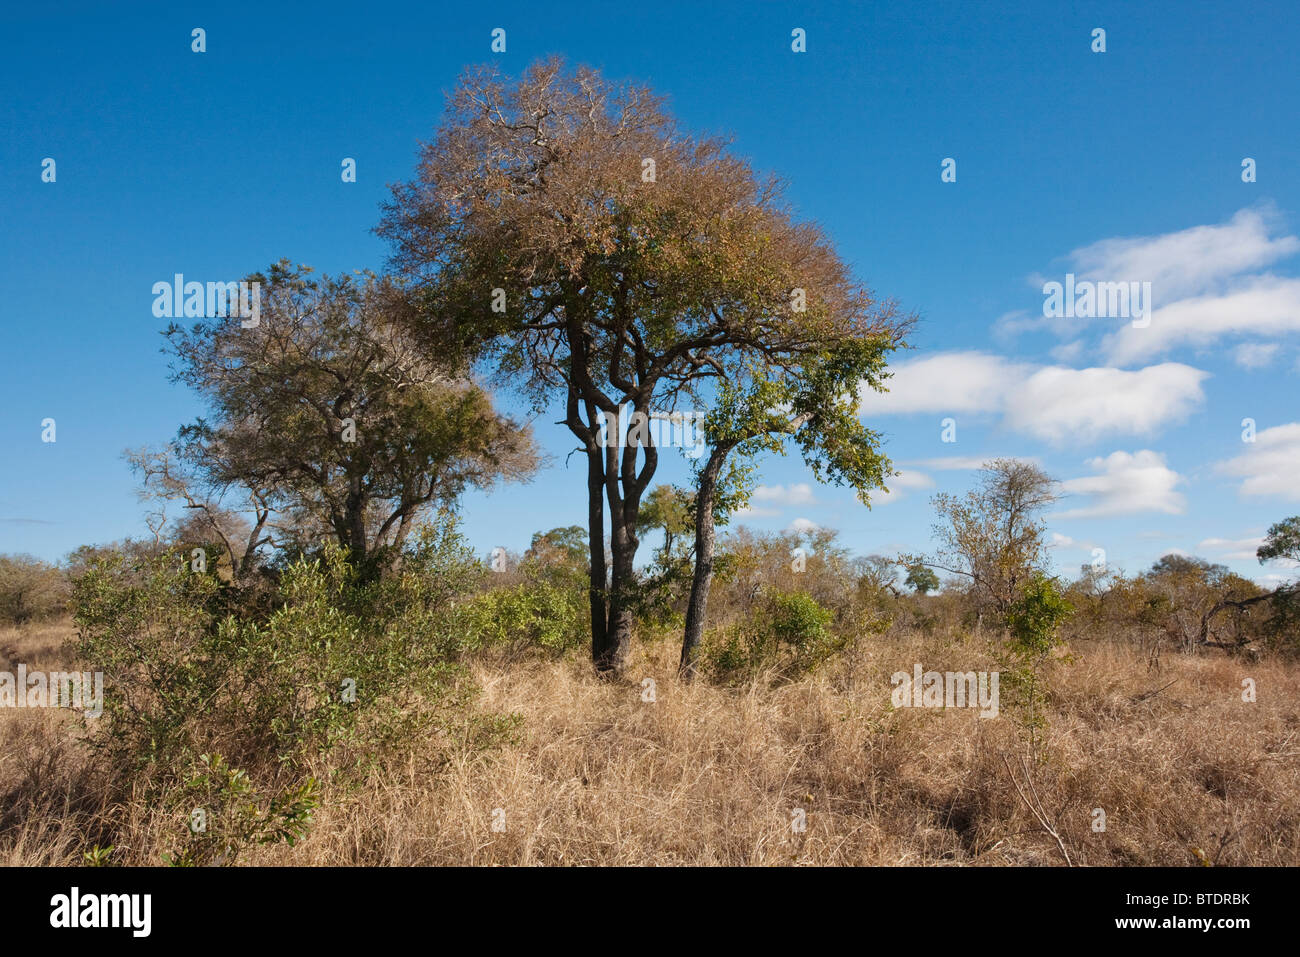 La Savane de feuillus avec un grand arbre Tamboti (Spirostachys africana) Banque D'Images